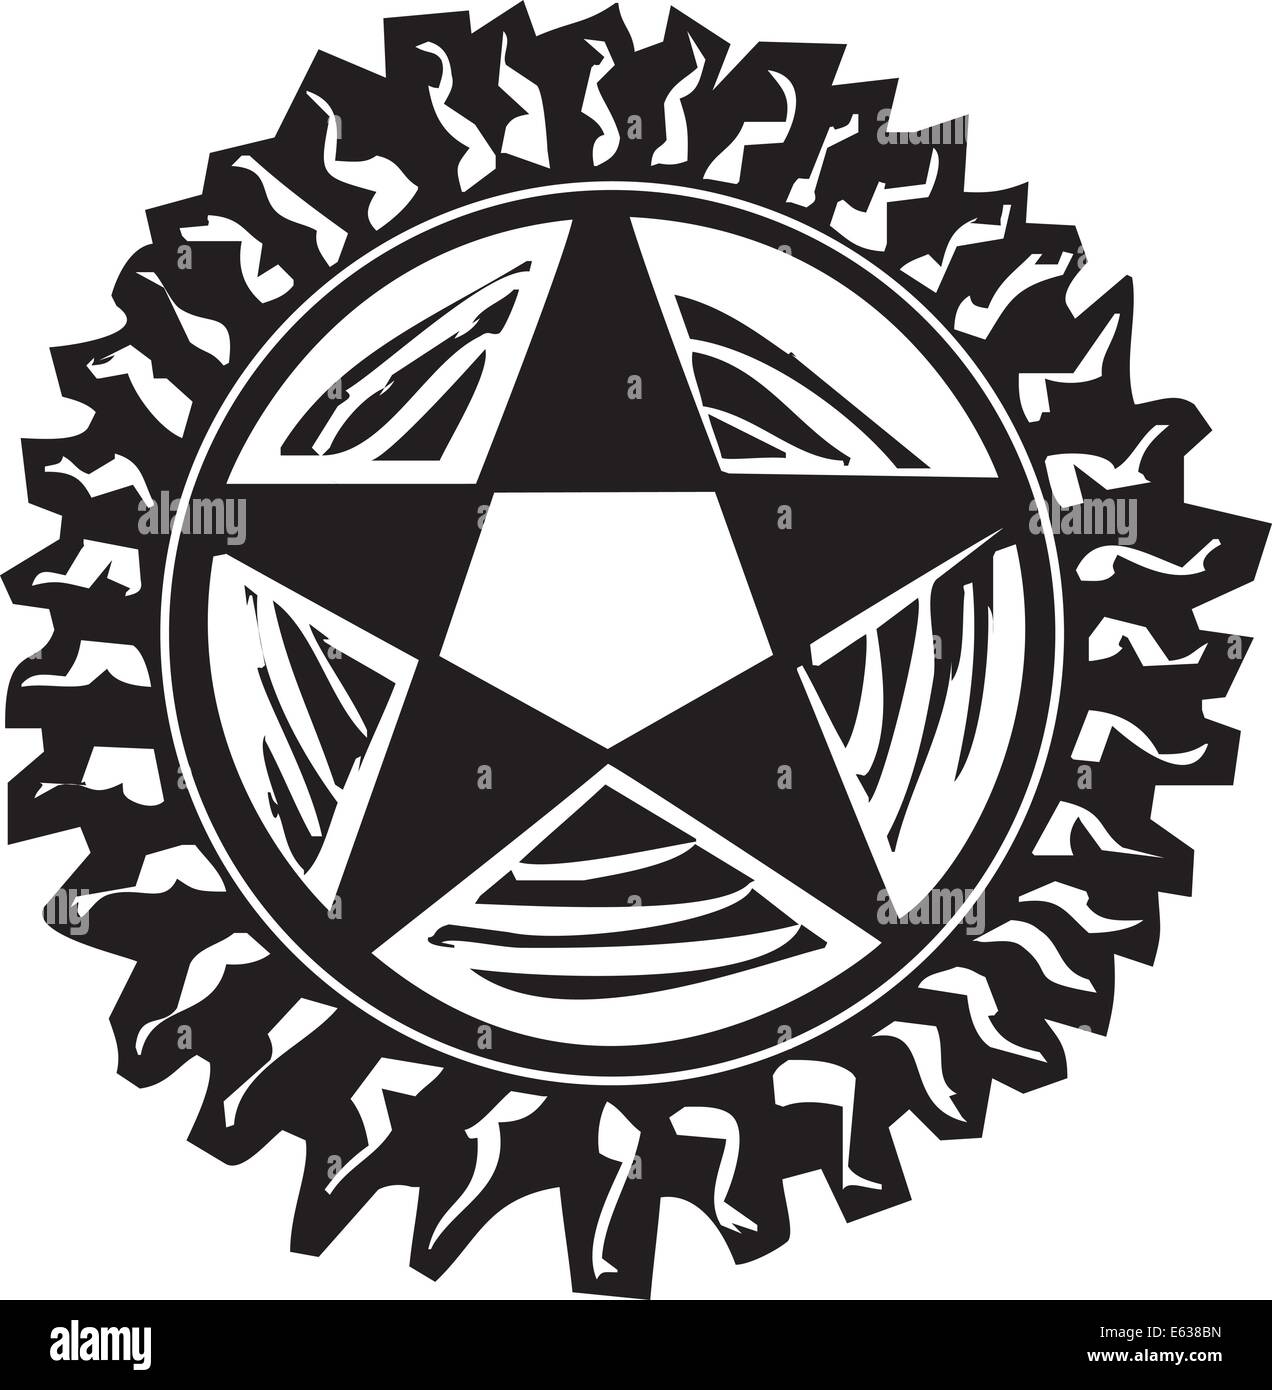 Holzschnitt-Stil-Pentagramm mit Strahlen wie die Sonne Stock Vektor